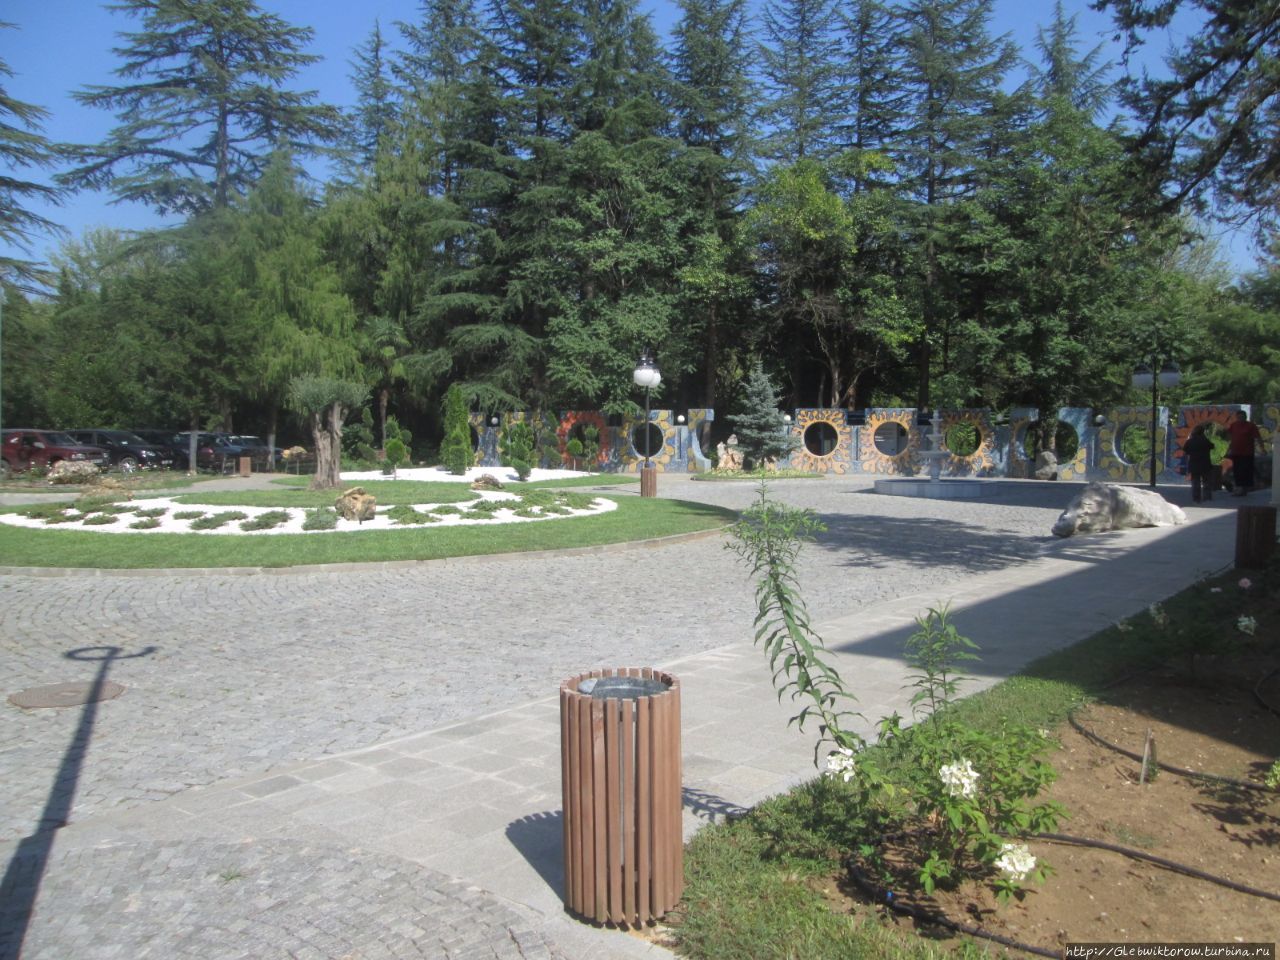 Прогулка по курортному парку в центре Цхалтубо, Грузия